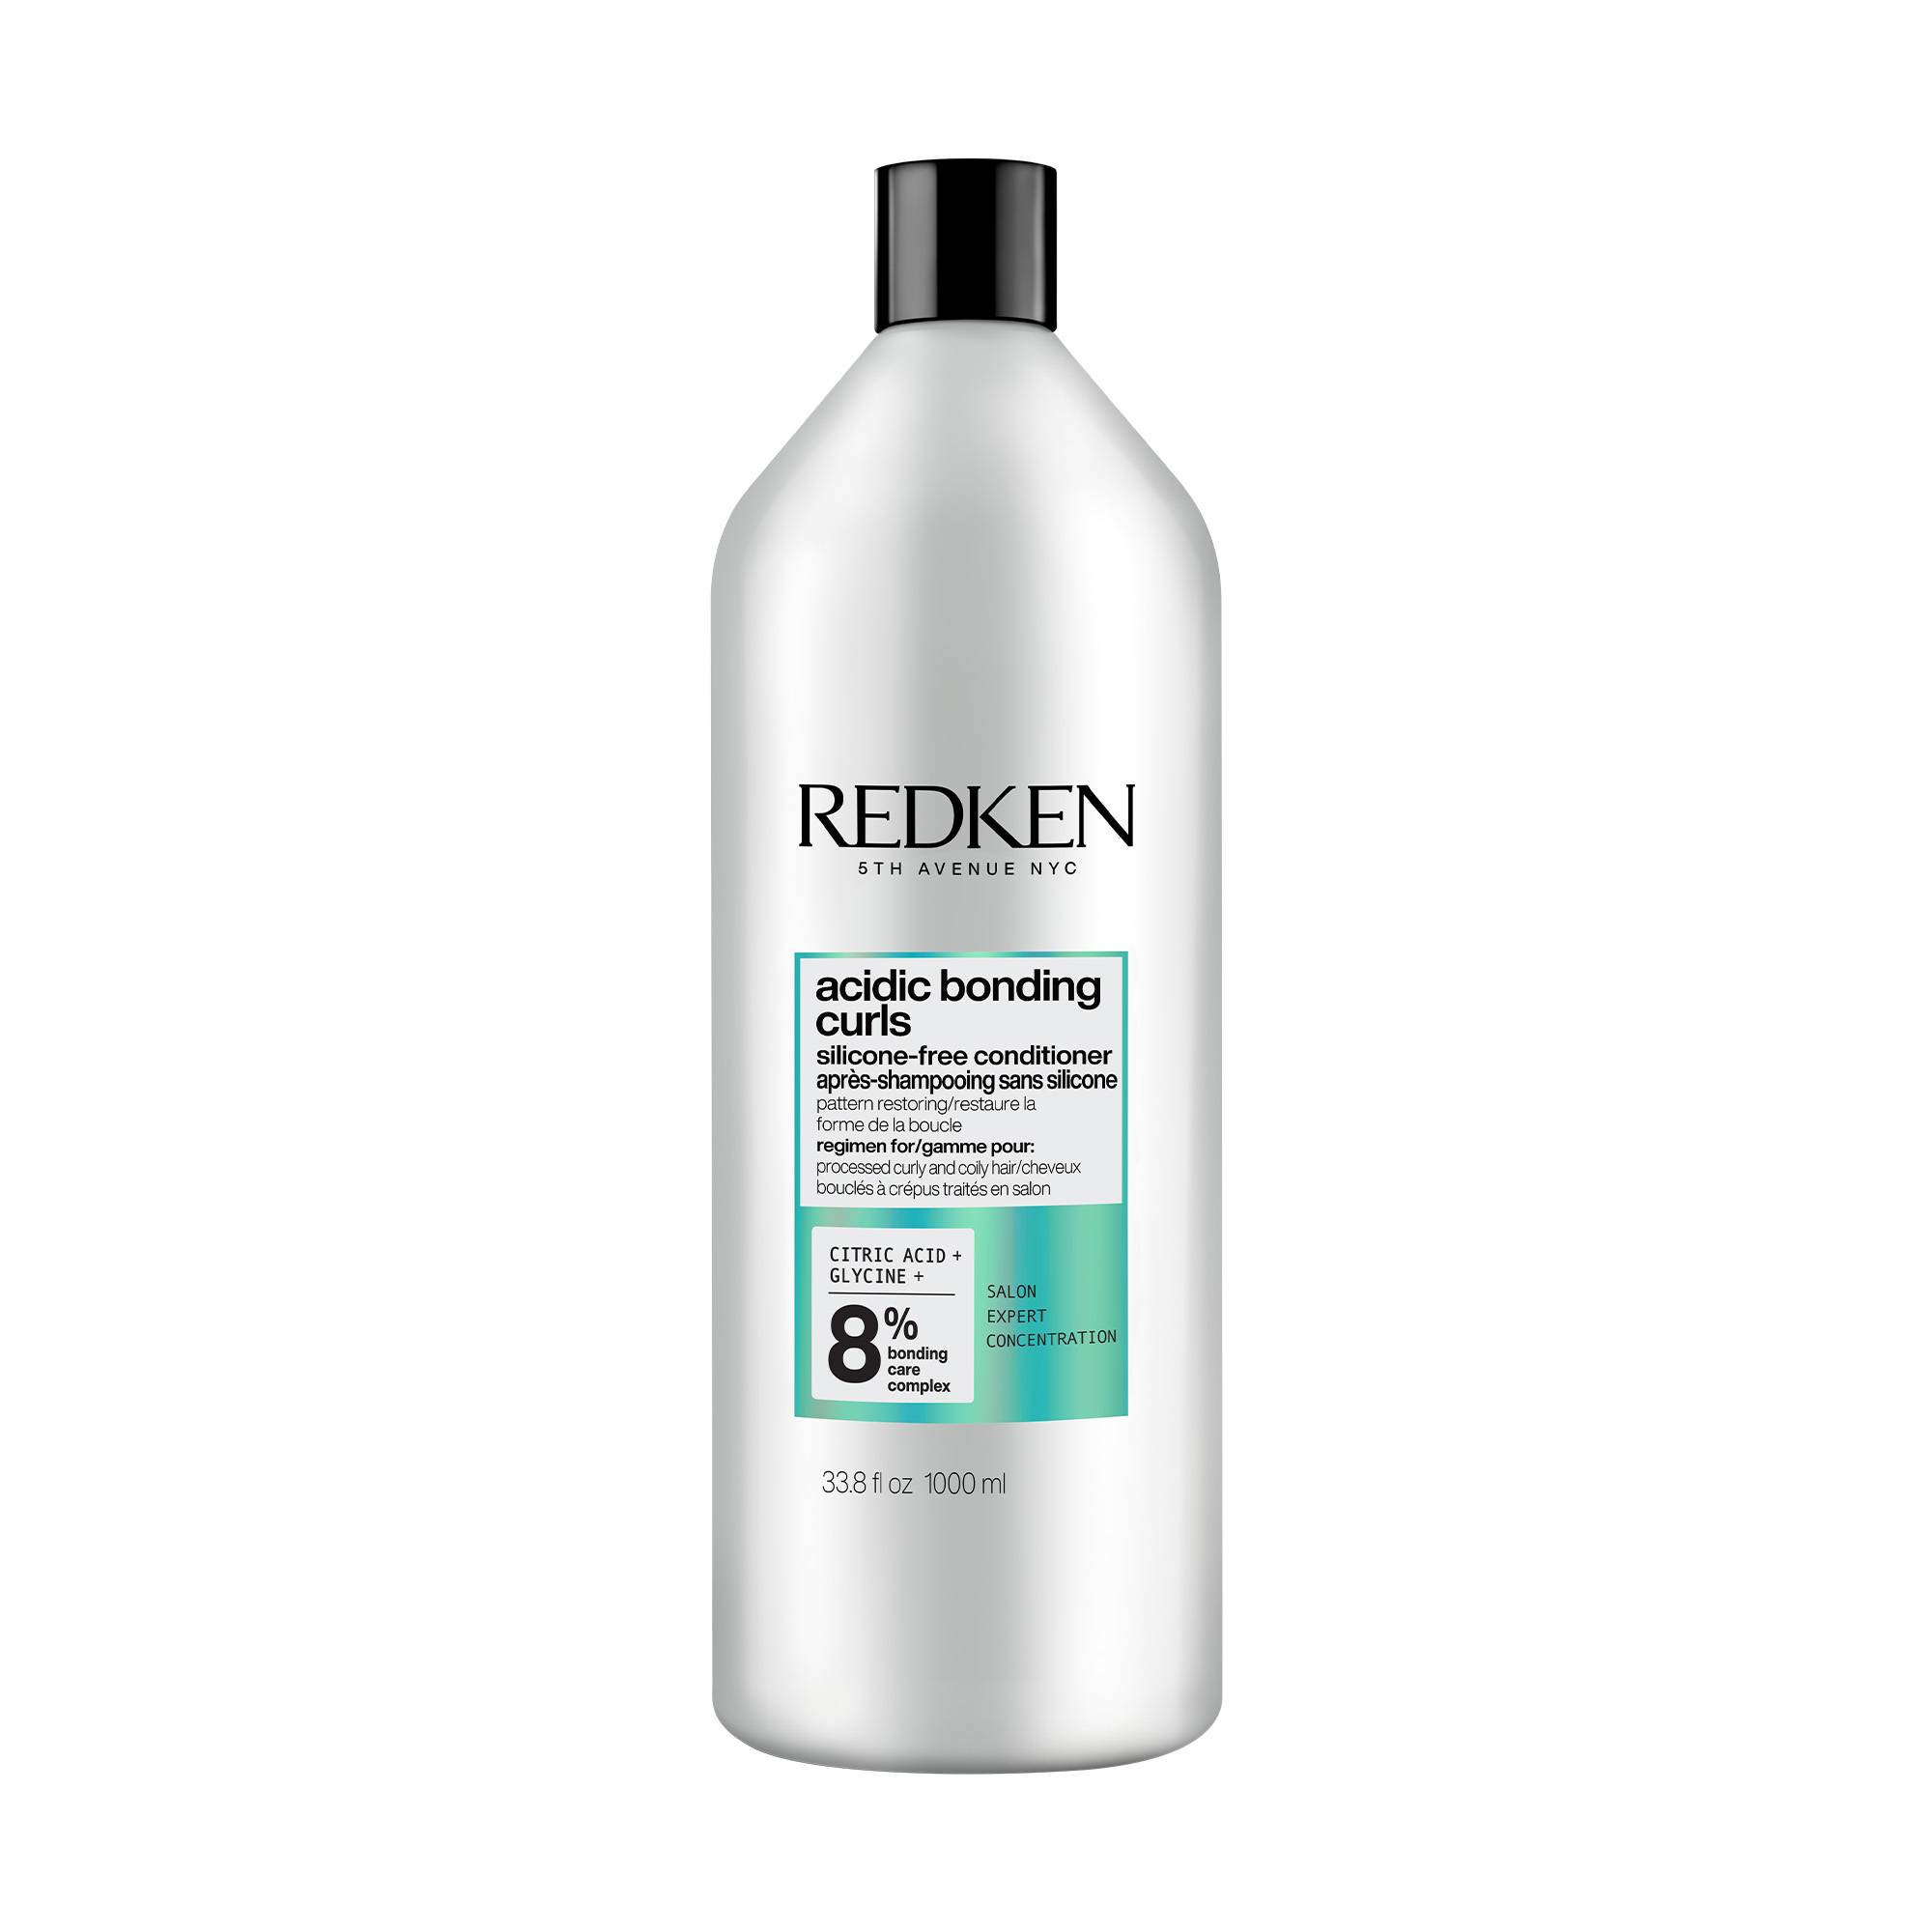 Après-Shampoing Acidic Bonding Curls de la marque Redken Contenance 1000ml - 1